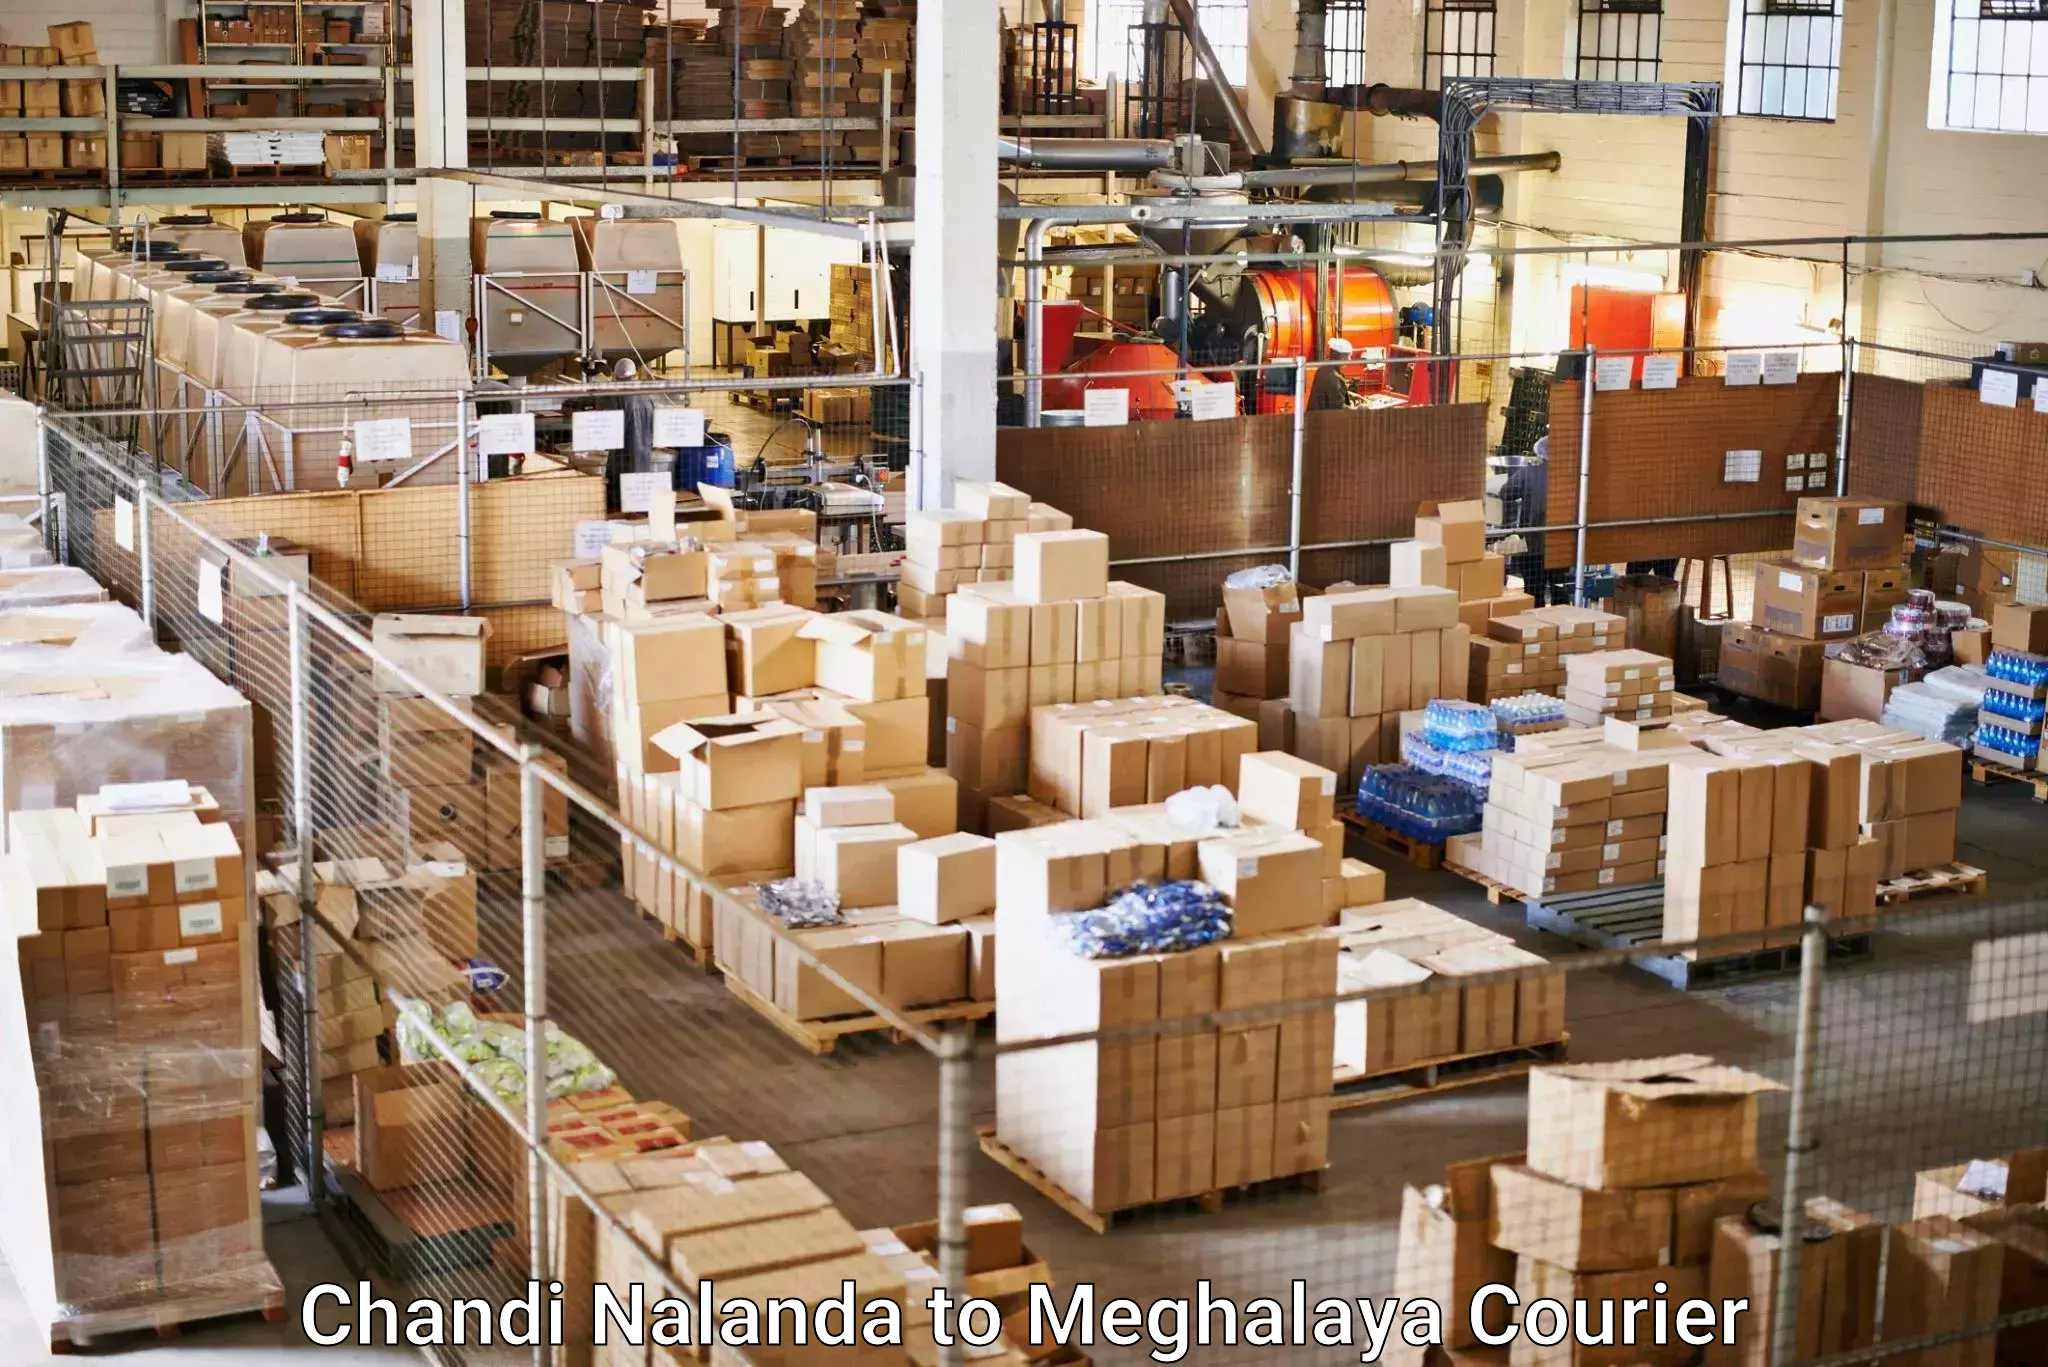 International courier networks Chandi Nalanda to Meghalaya